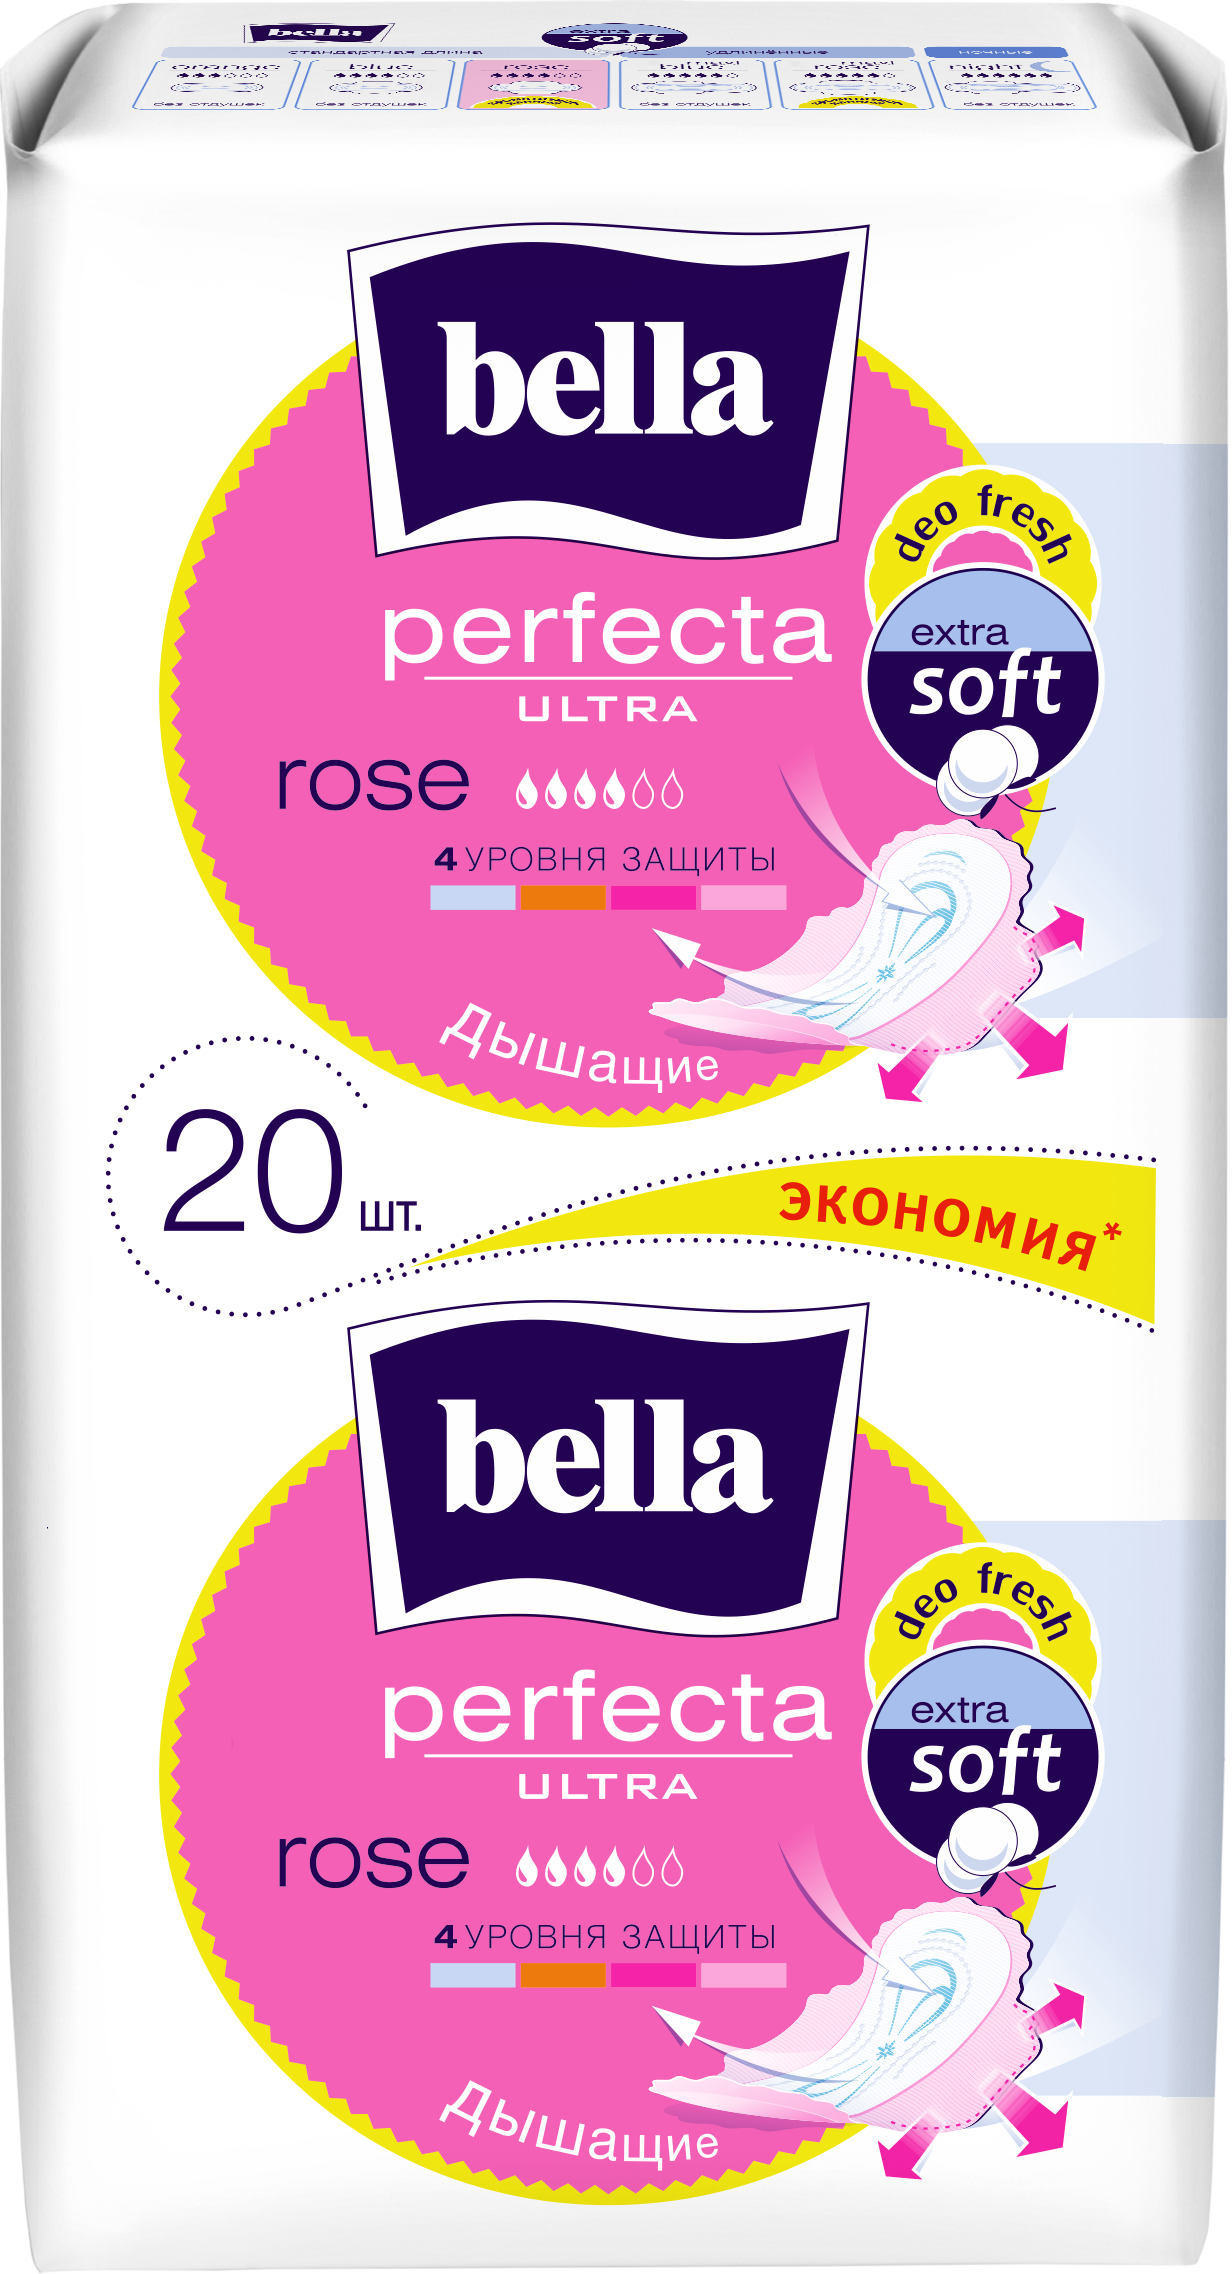 Гигиенические прокладки Bella Perfecta Ultra Rose deo fresh, 20 шт. - фото 1